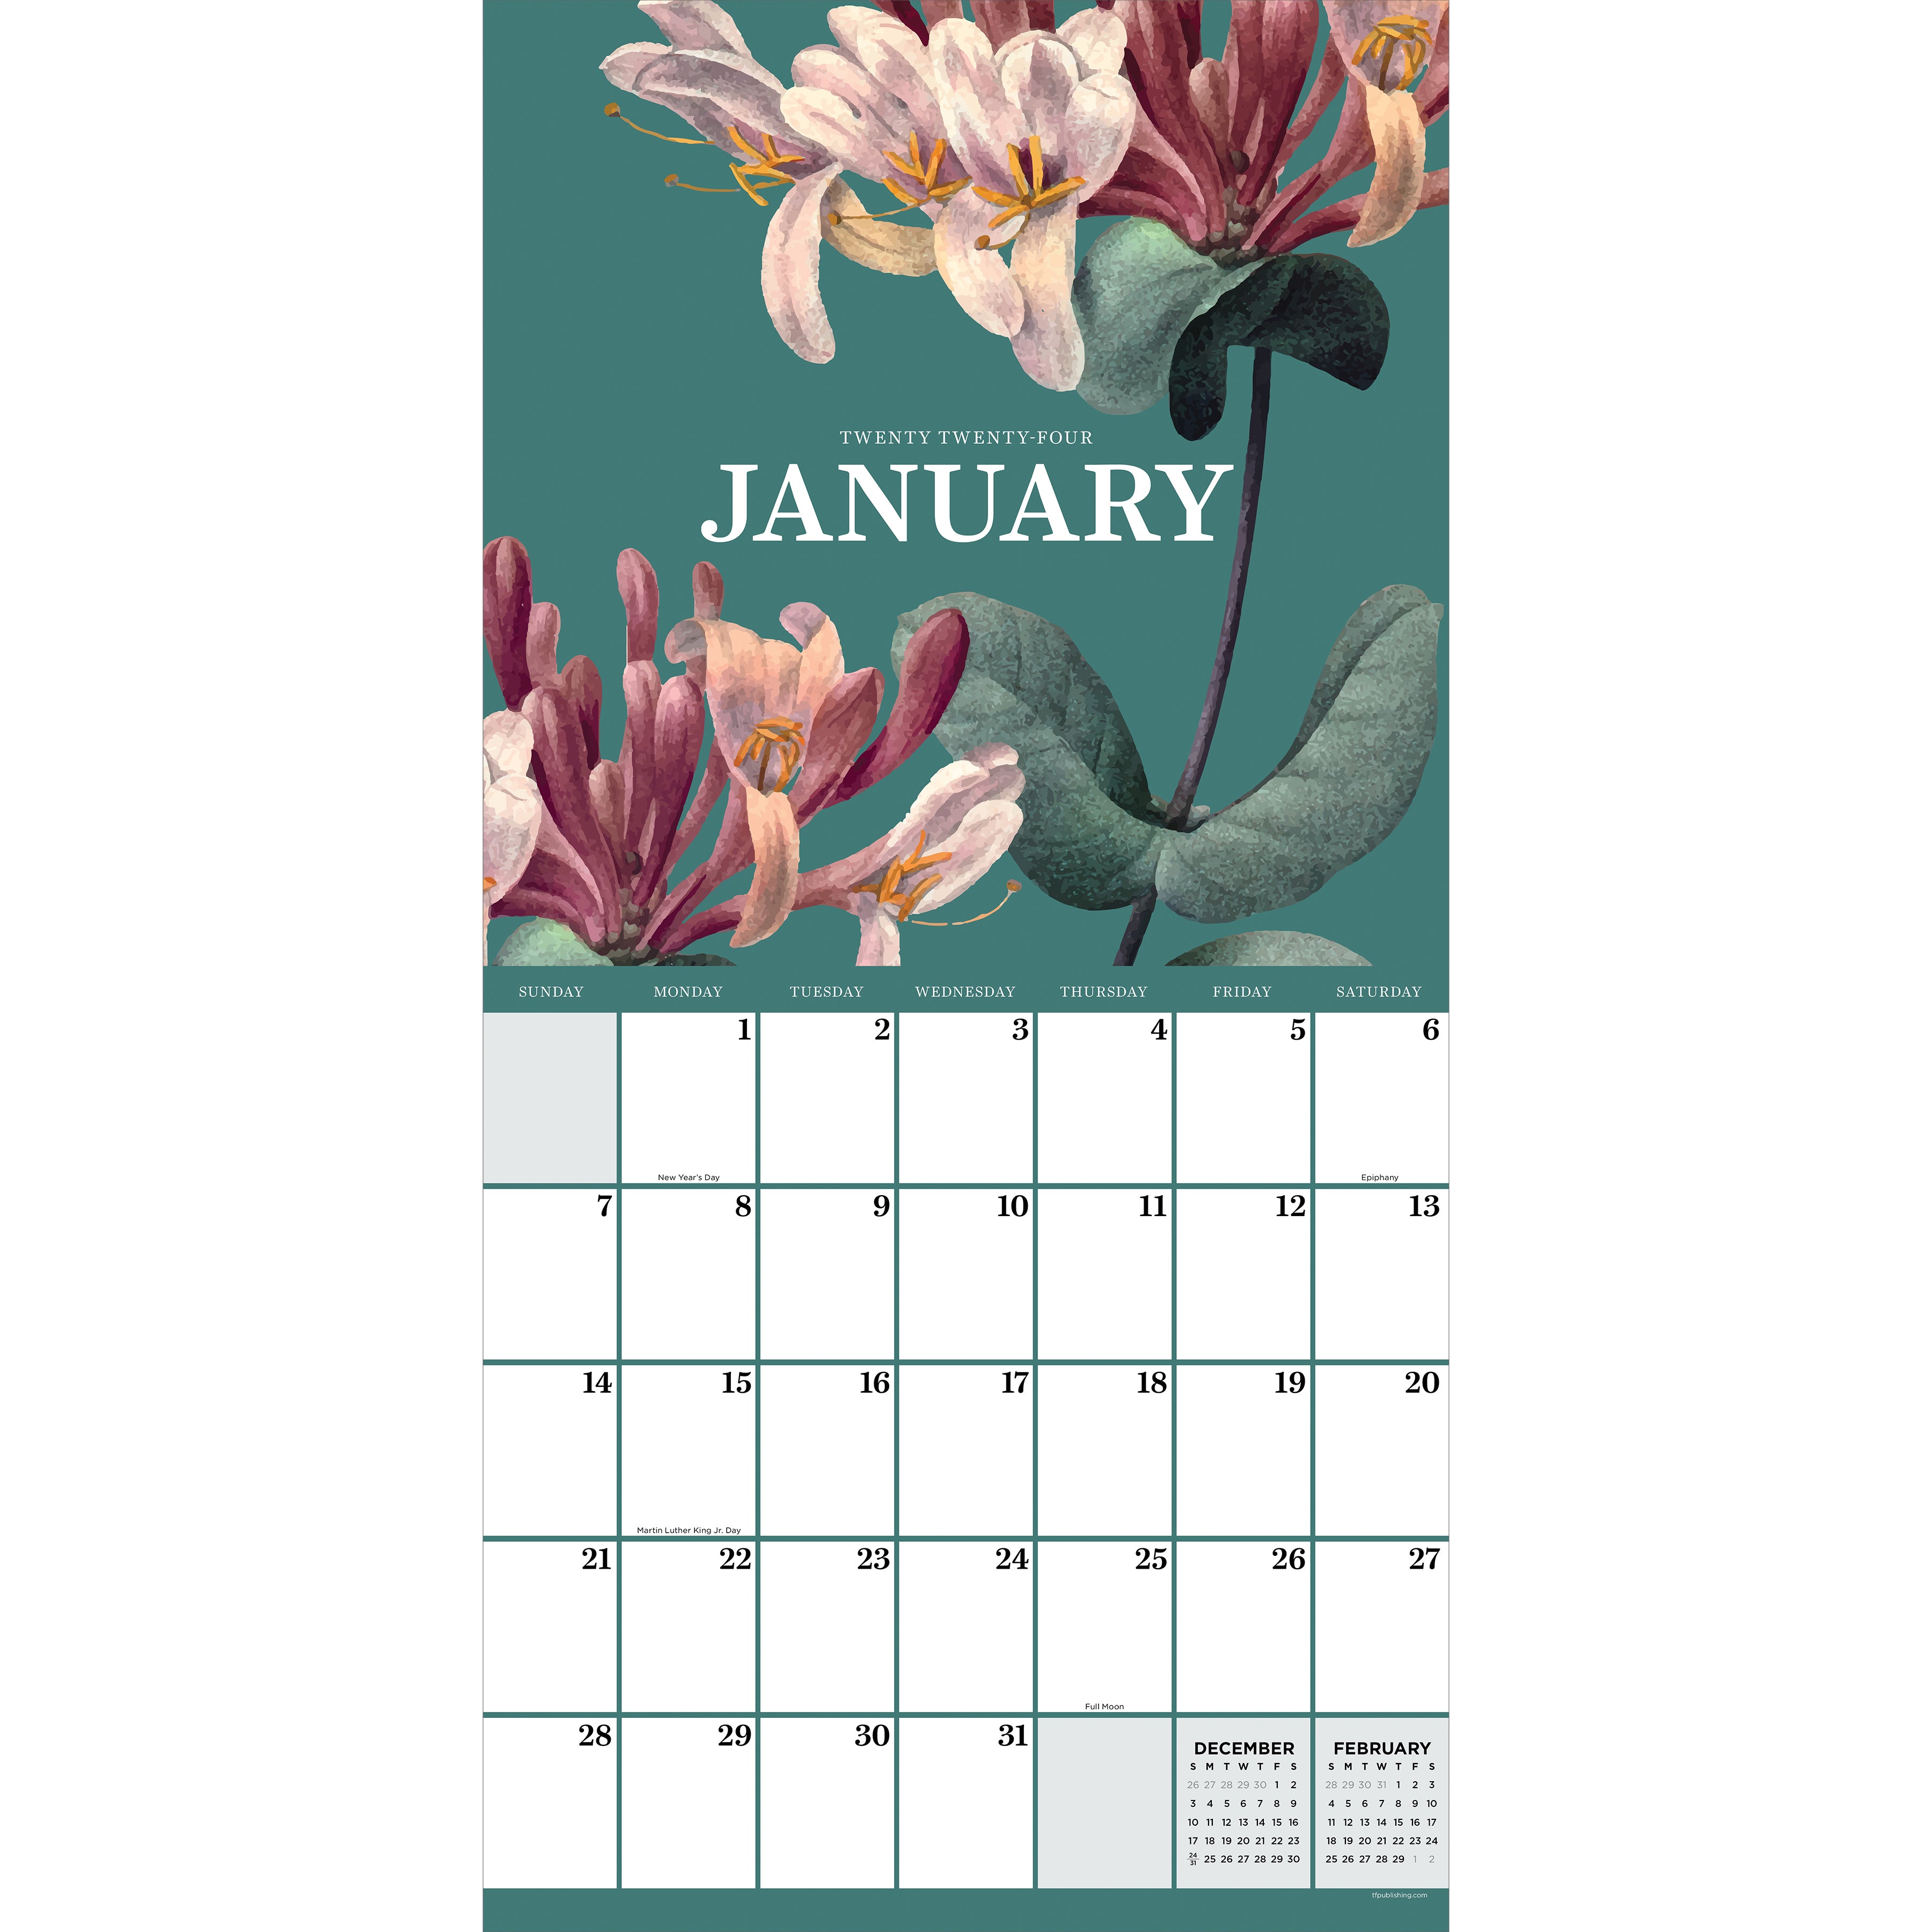 2024 Vintage Botanicals - Square Wall Calendar US